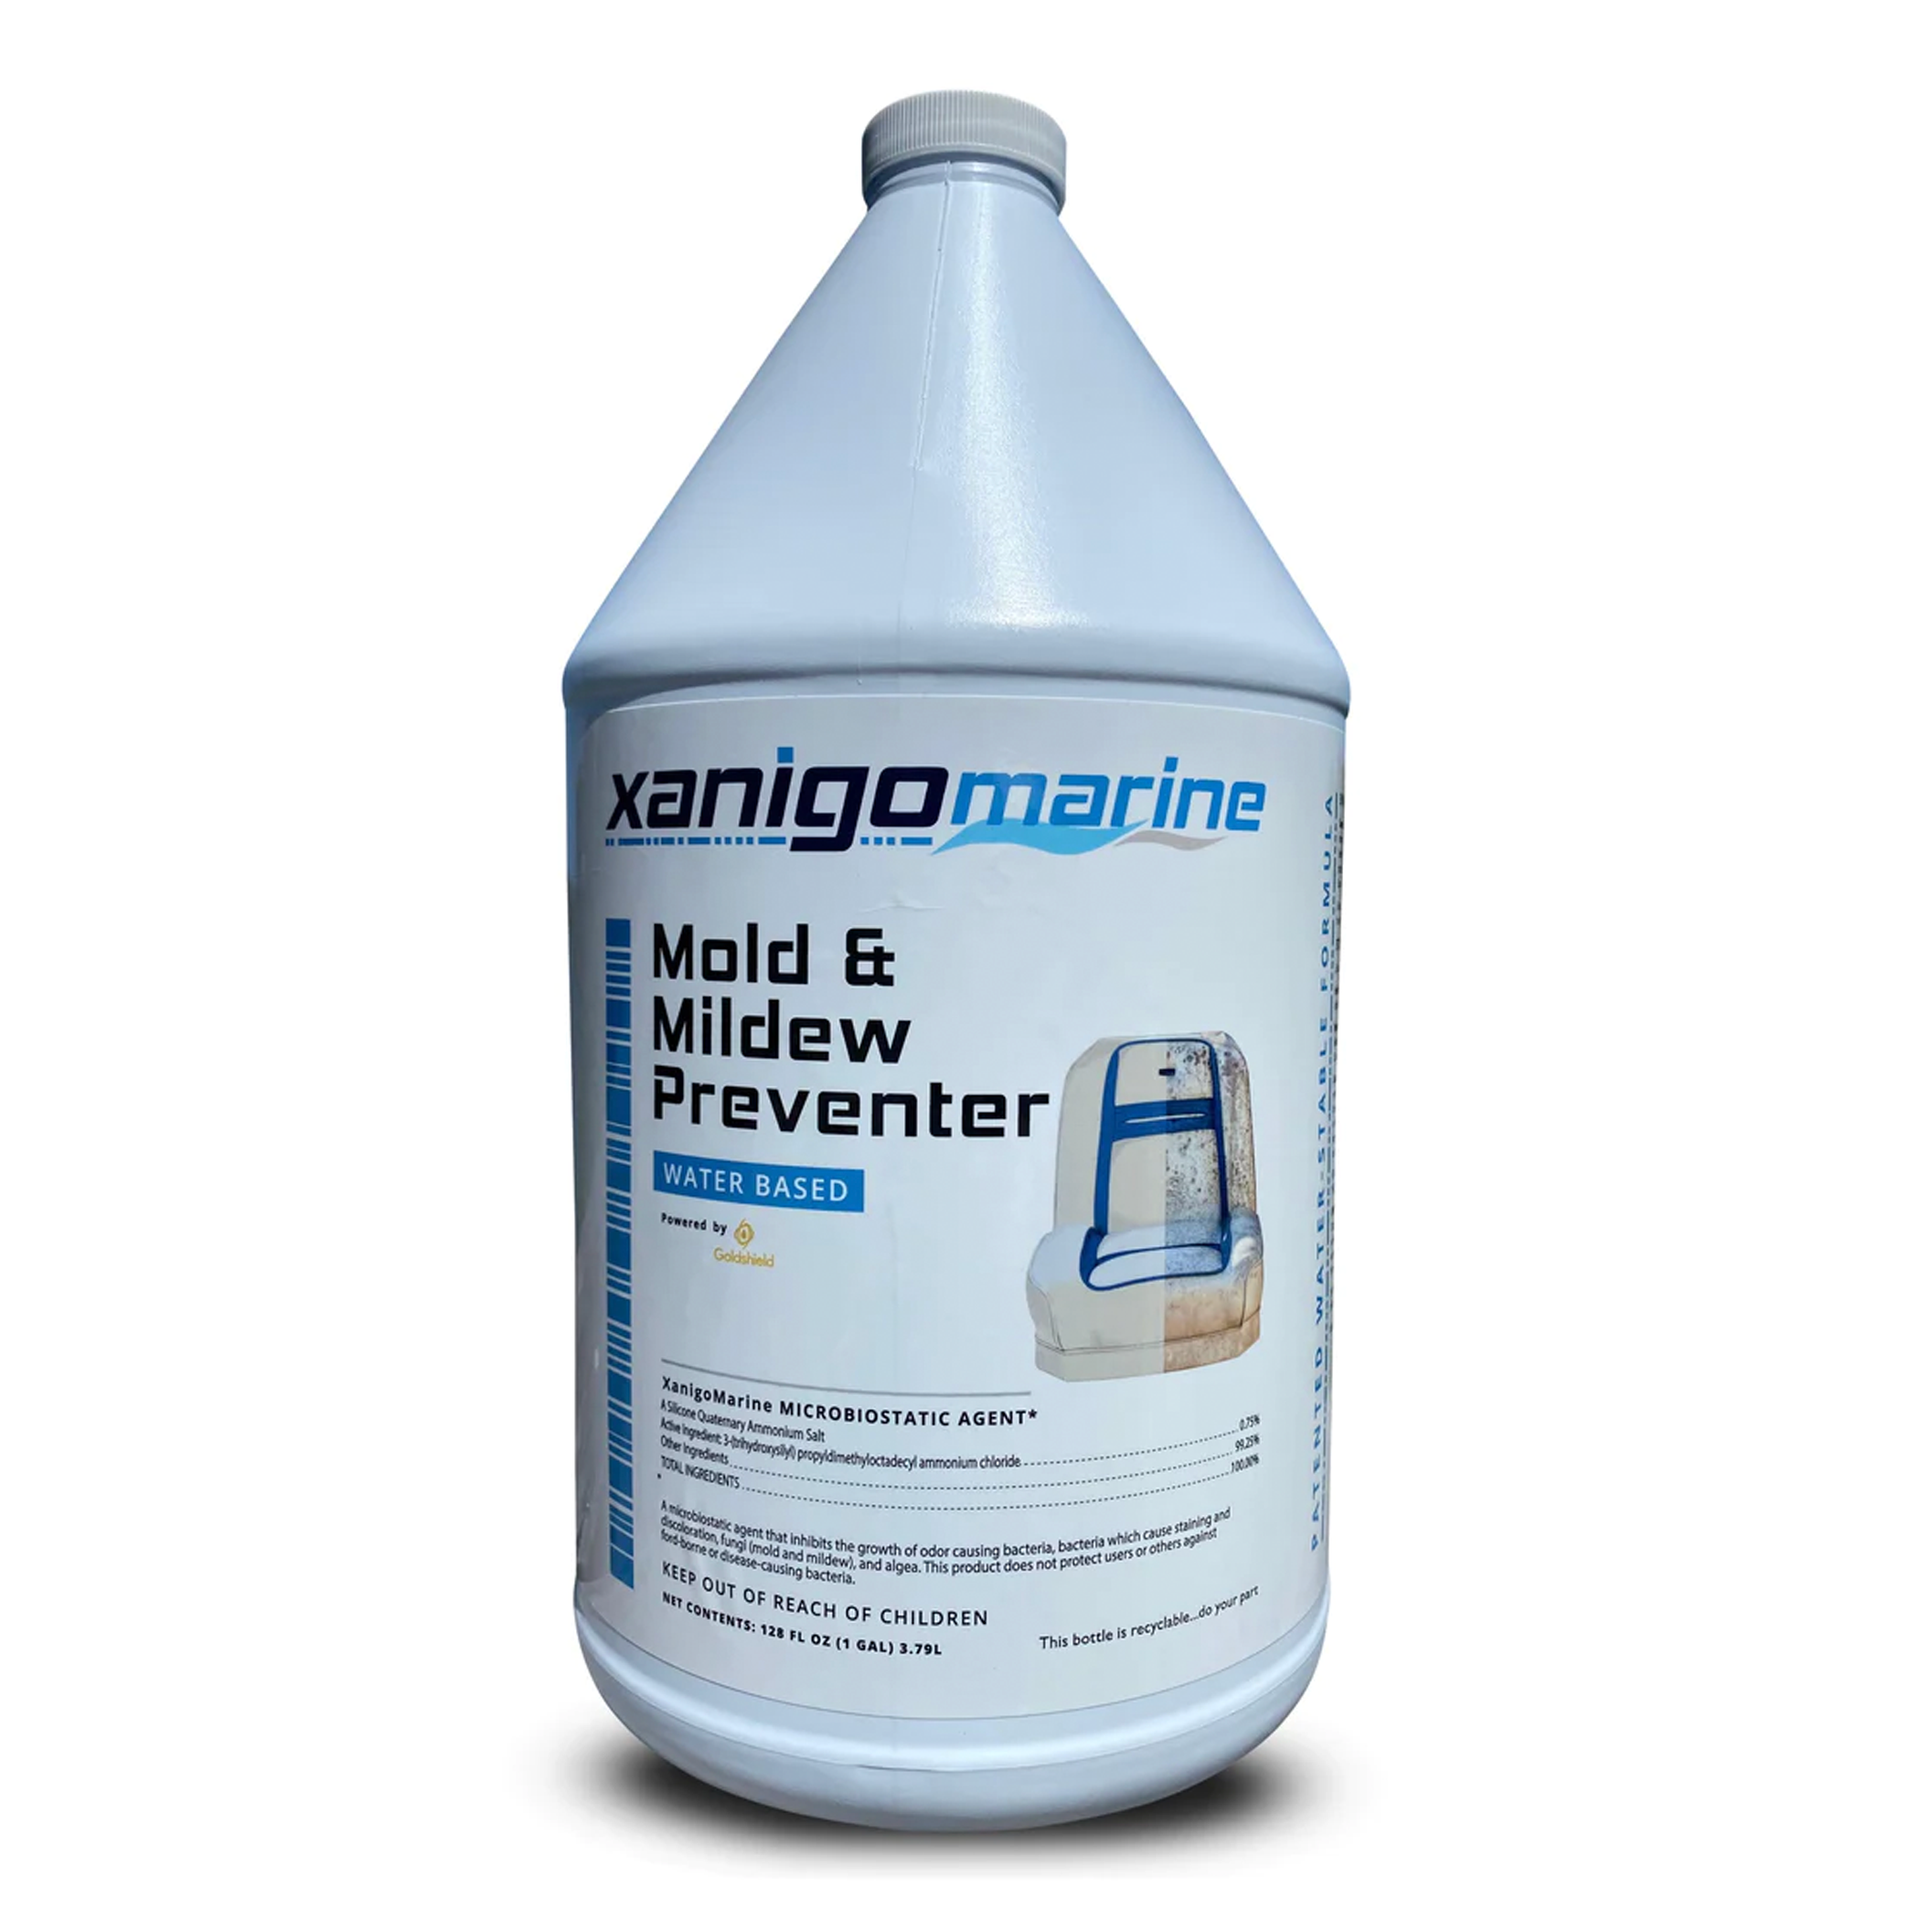 Xanigo Marine Waterless Wash – Gentle, Water-Saving Cleaning